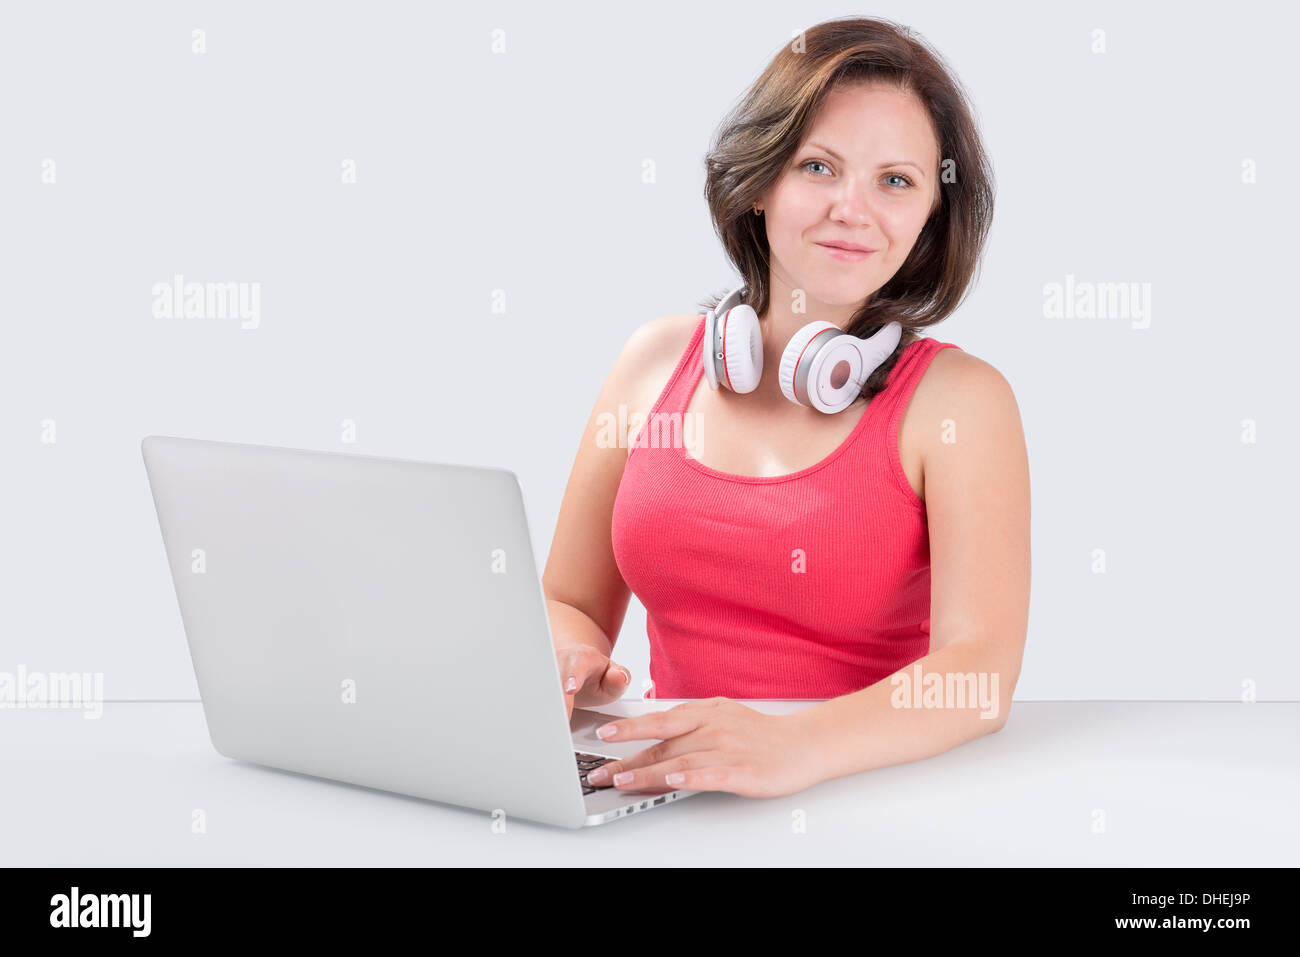 Junge Frau sitzt vor Laptop mit Bluetooth Kopfhörer an ihrem Hals und schaut in die Kamera Stockfoto